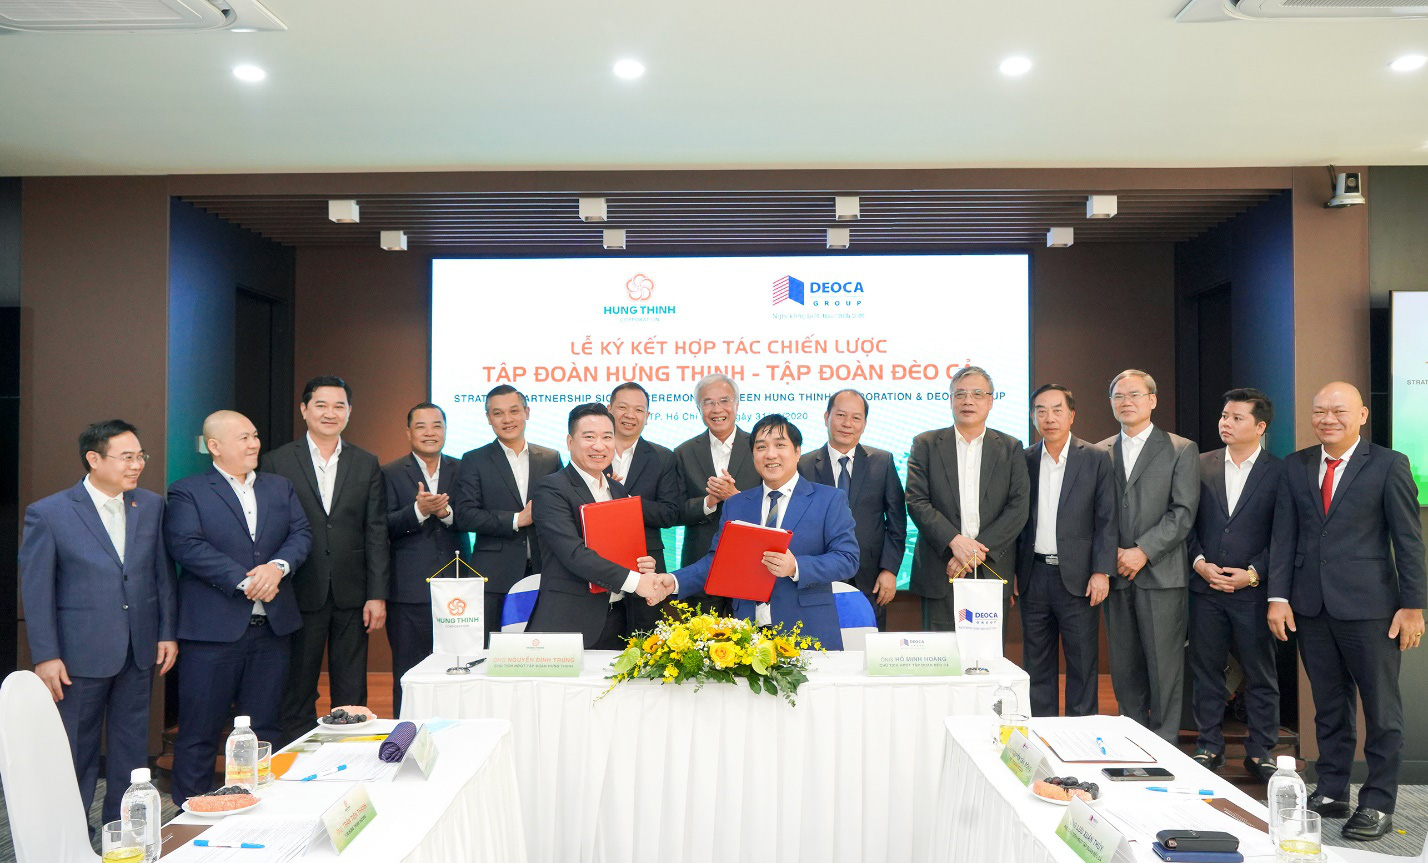 Tập đoàn Hưng Thịnh và Hưng Thịnh Incons ký kết hợp tác chiến lược cùng Tập đoàn Đèo Cả - Ảnh 1.